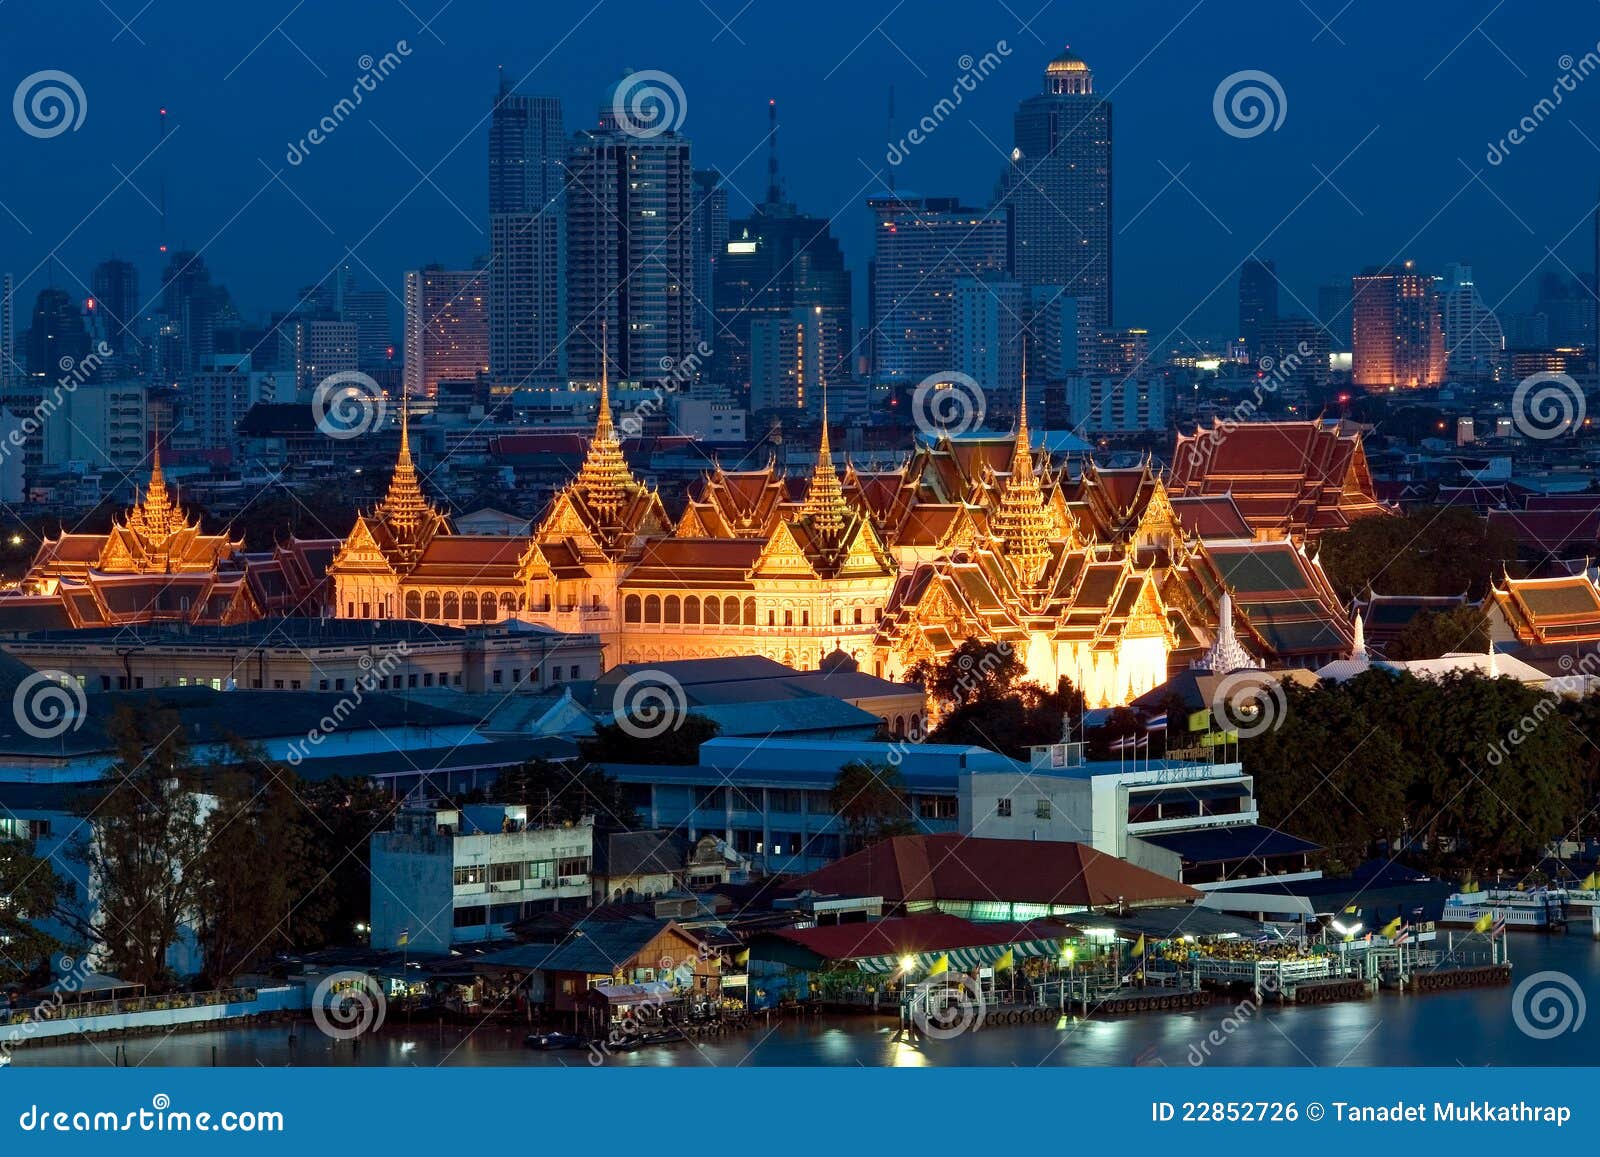 grand palace , bangkok, thailand